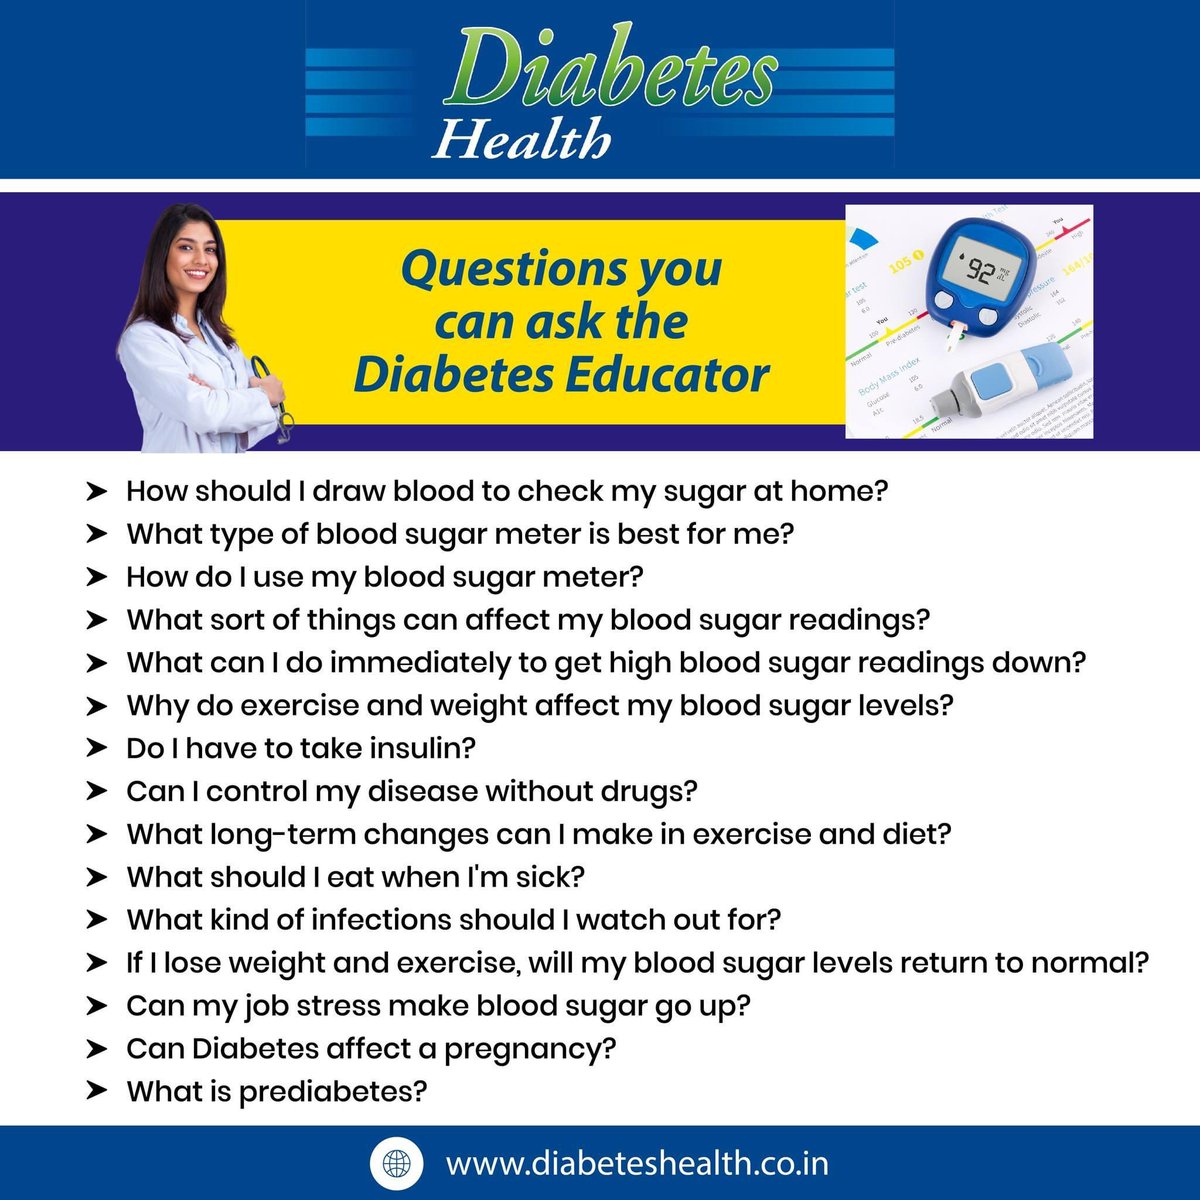 #diabetes #diabeteseducator #diabetescare #diabetesmanagement #diabeteshealthmagazine #diabetesawareness #t1d #t2d #bloodglucosecontrol